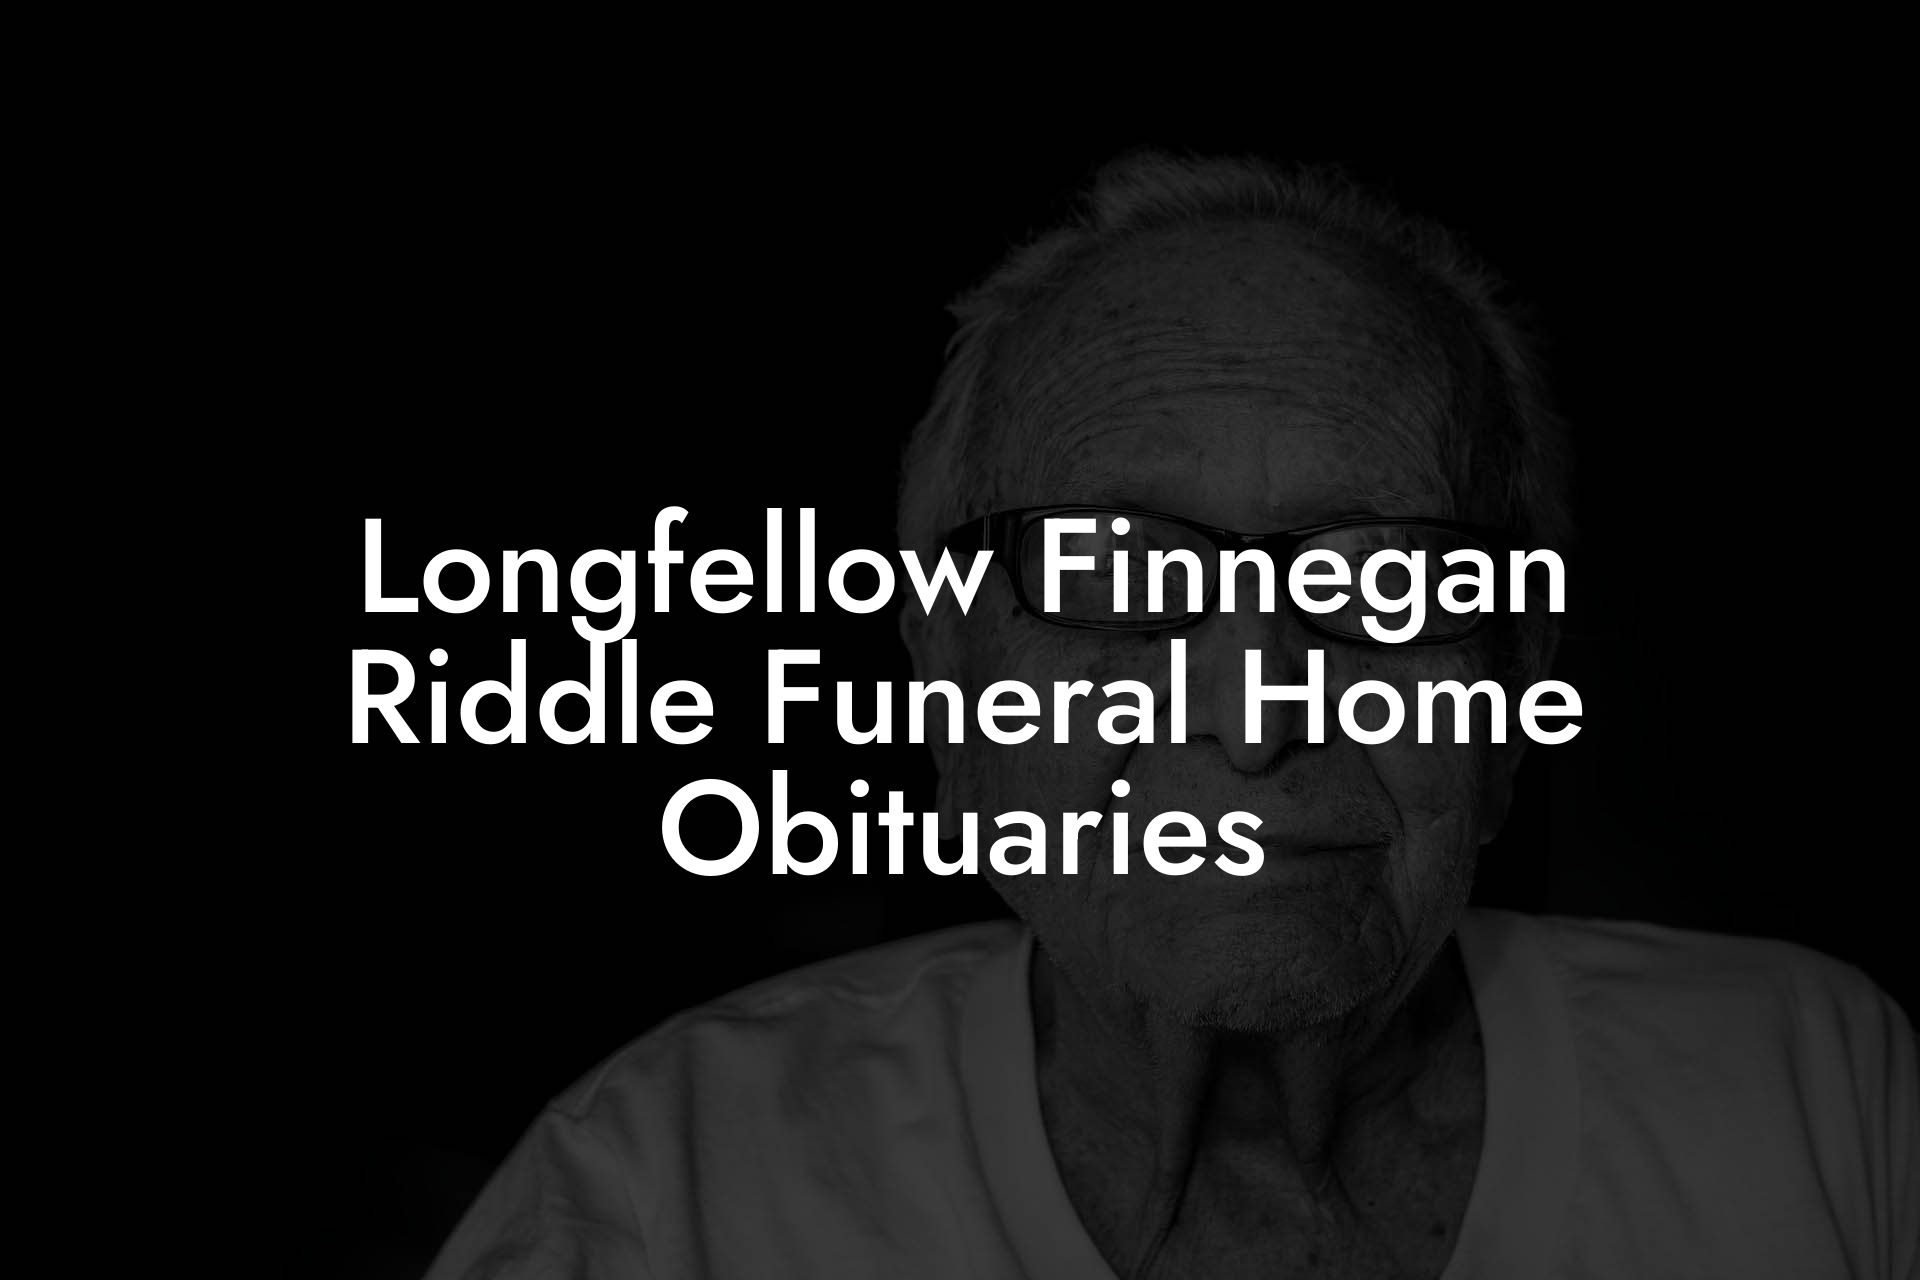 Longfellow Finnegan Riddle Funeral Home Obituaries